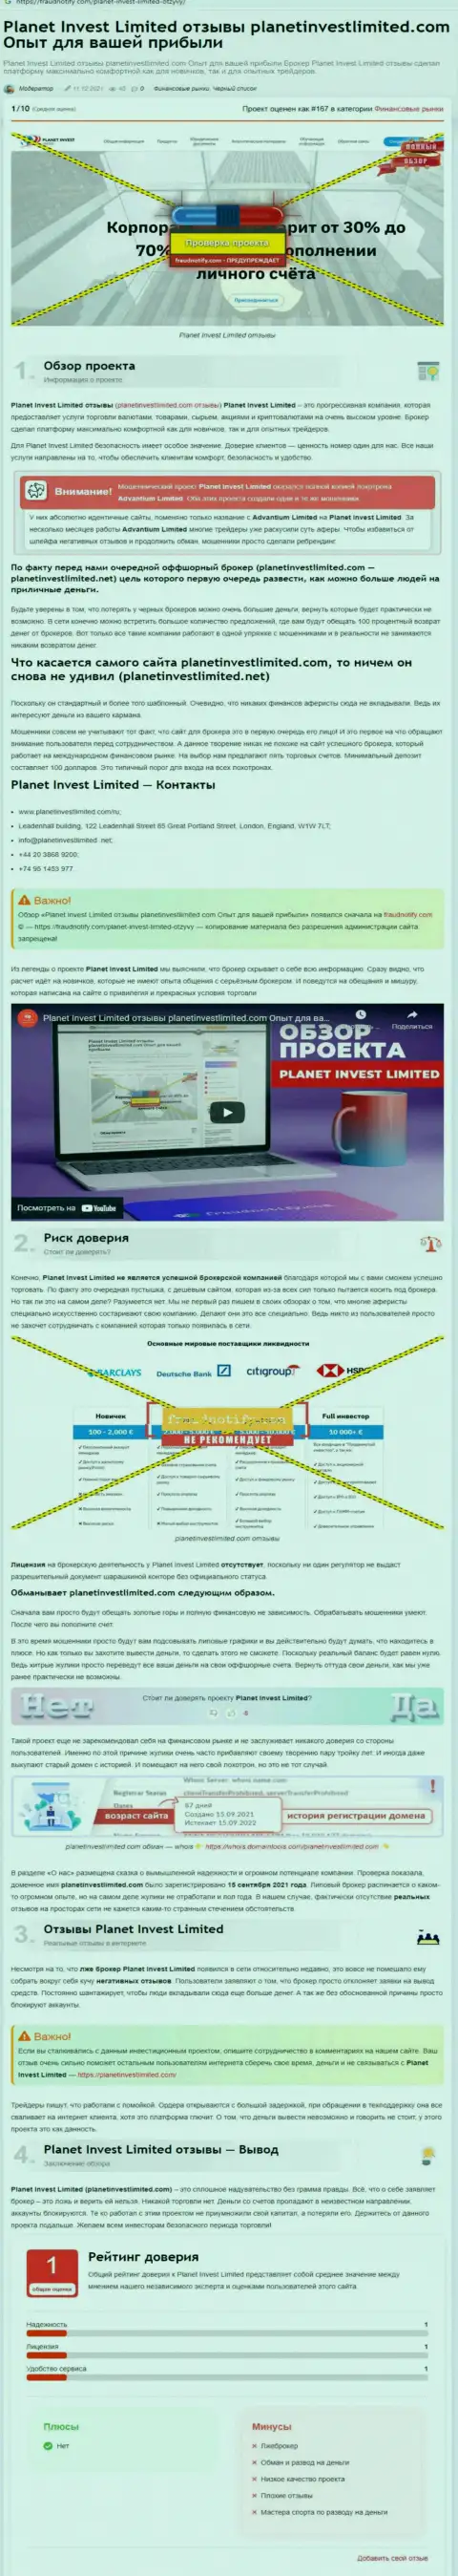 Обзор компании Planet Invest Limited, зарекомендовавшей себя, как интернет мошенника